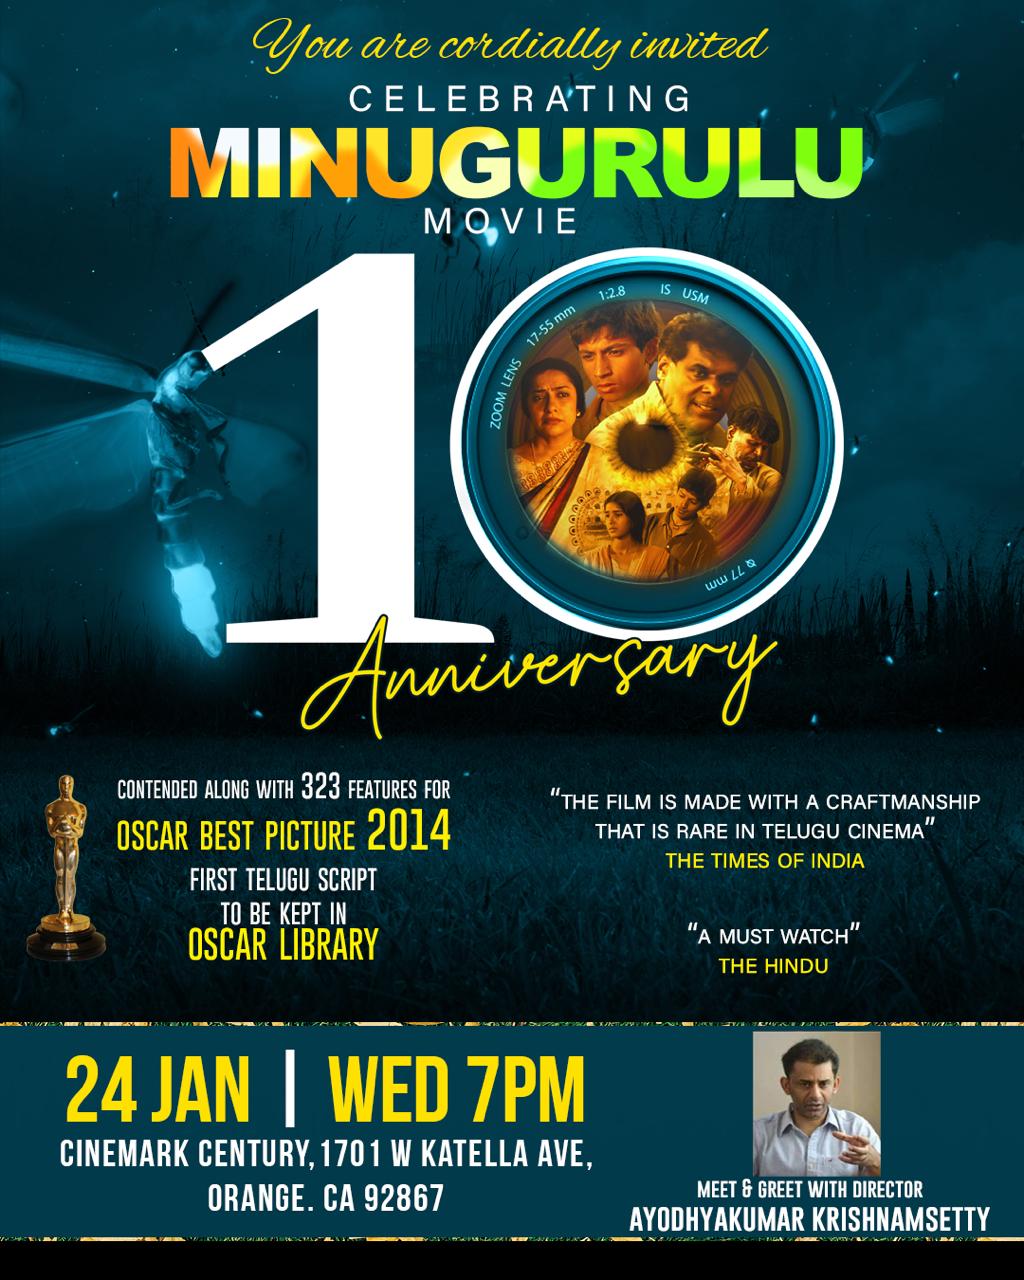 Minugurulu Movie Completed 10 Years